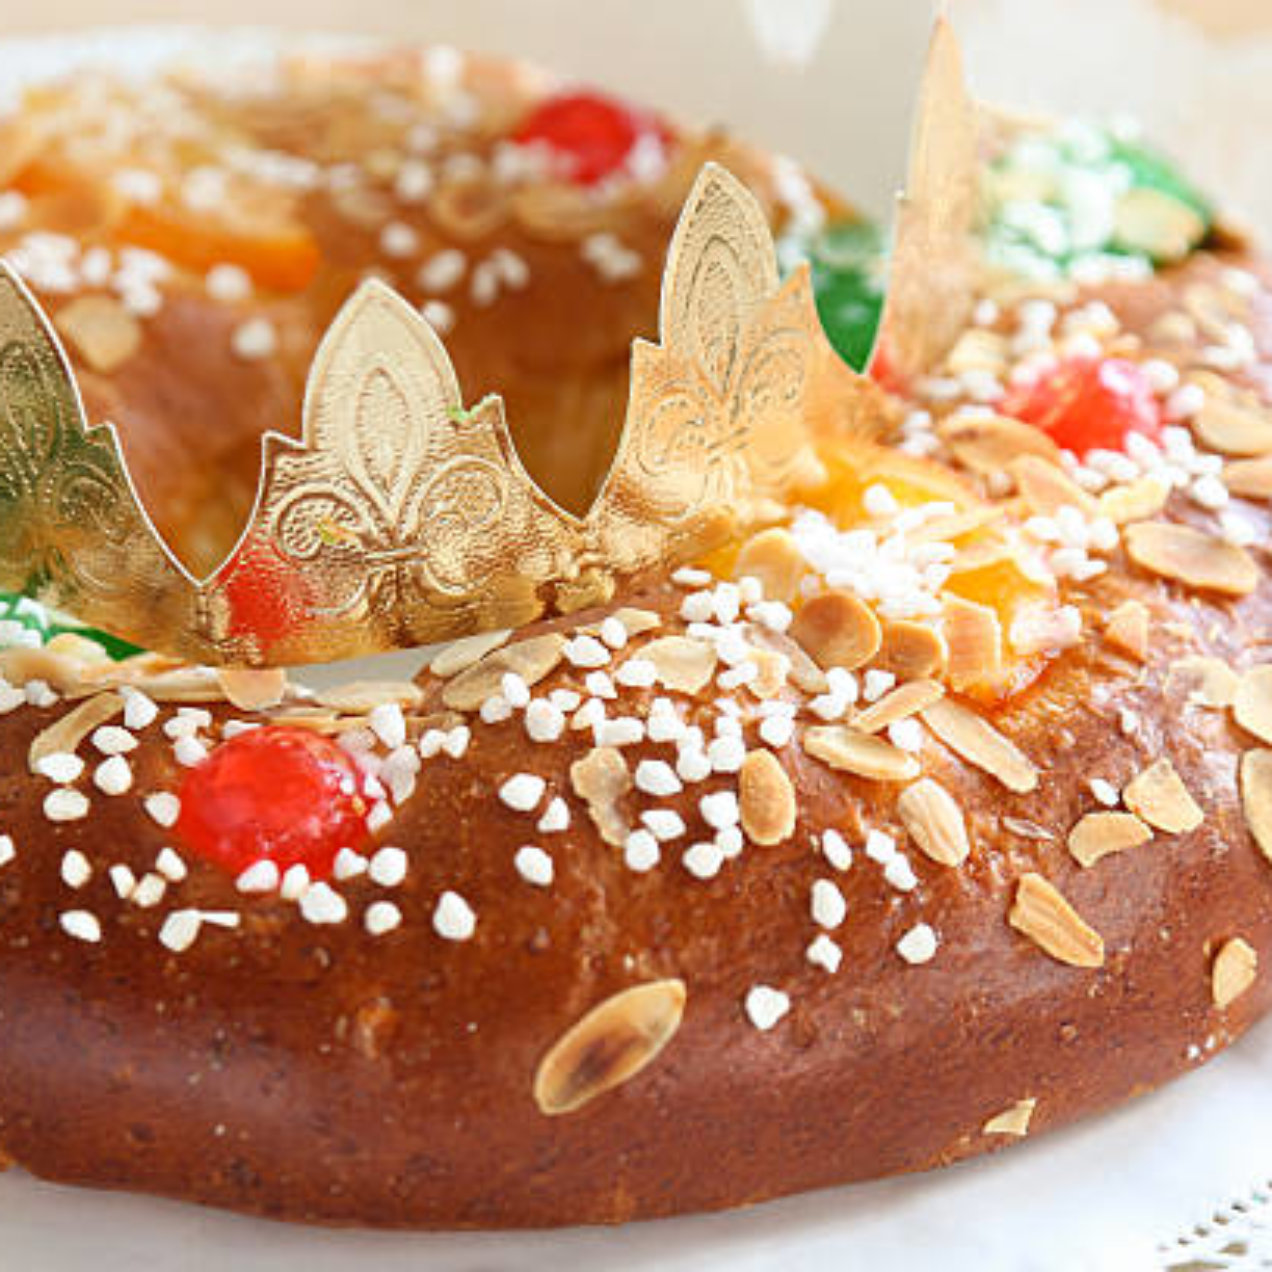 How Do You Make the Roscón de Reyes?